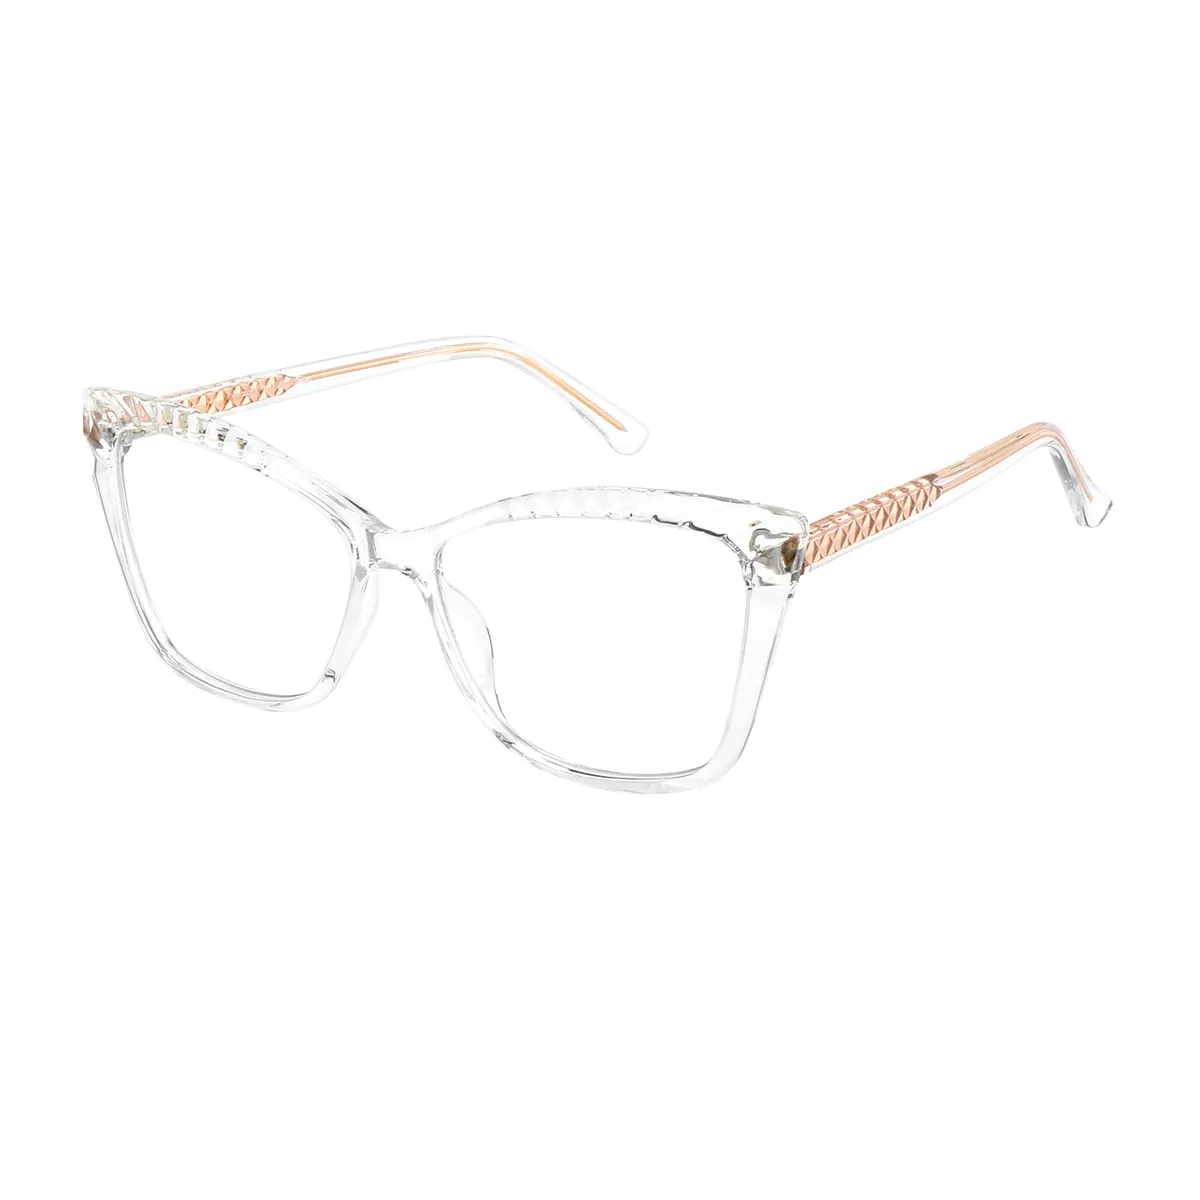 Fanny - Cat-eye Translucent Glasses for Women